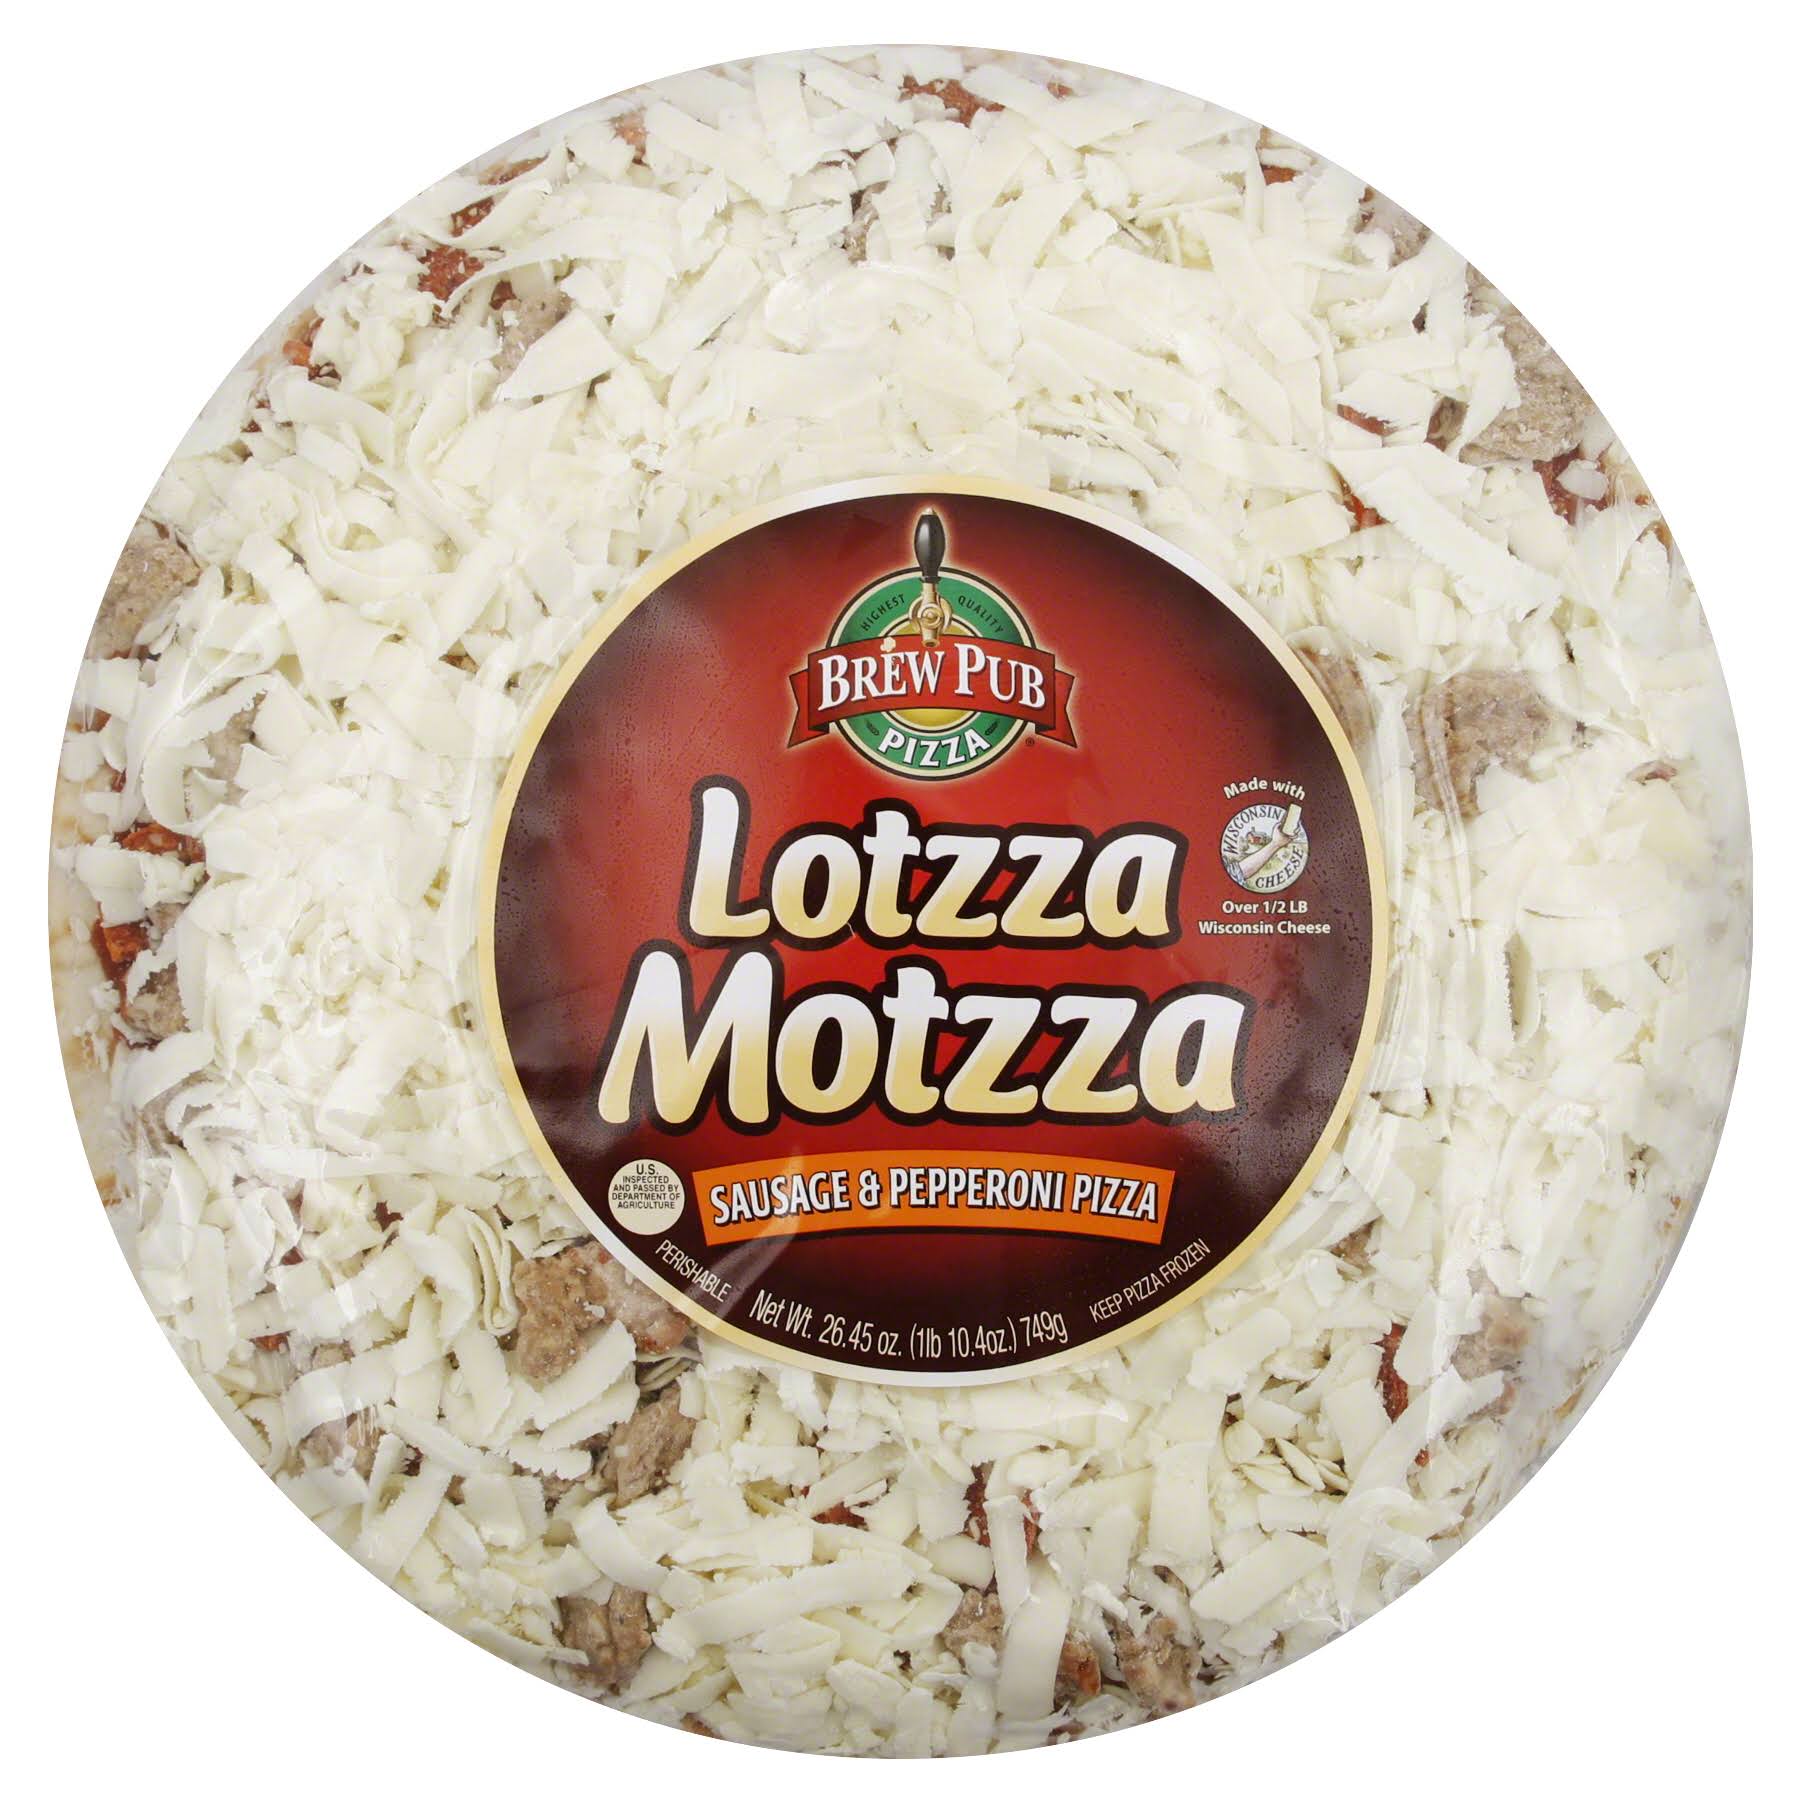 Brew Pub Lotzza Motzza Frozen Pizza - Sausage and Pepperoni, 12"